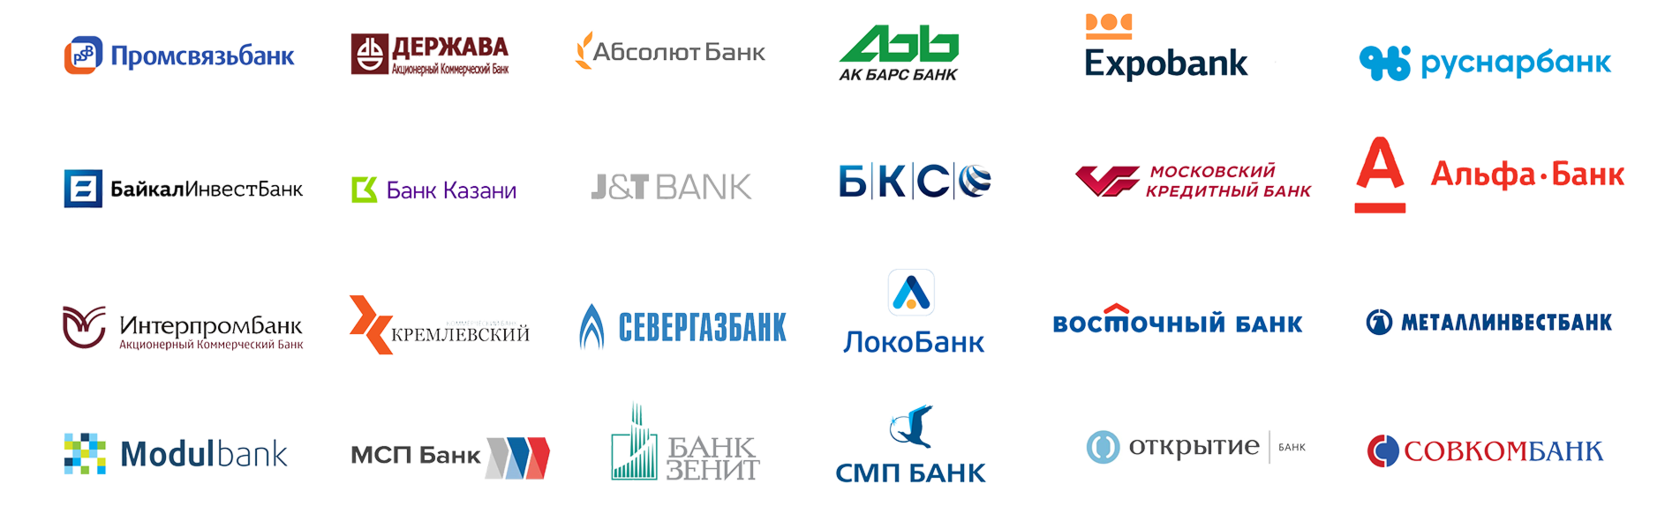 Банки партнеры банка белагропромбанк. Банки партнеры. Банки партнеры список. Модуль банк партнер. Банки партнеры РЖД.